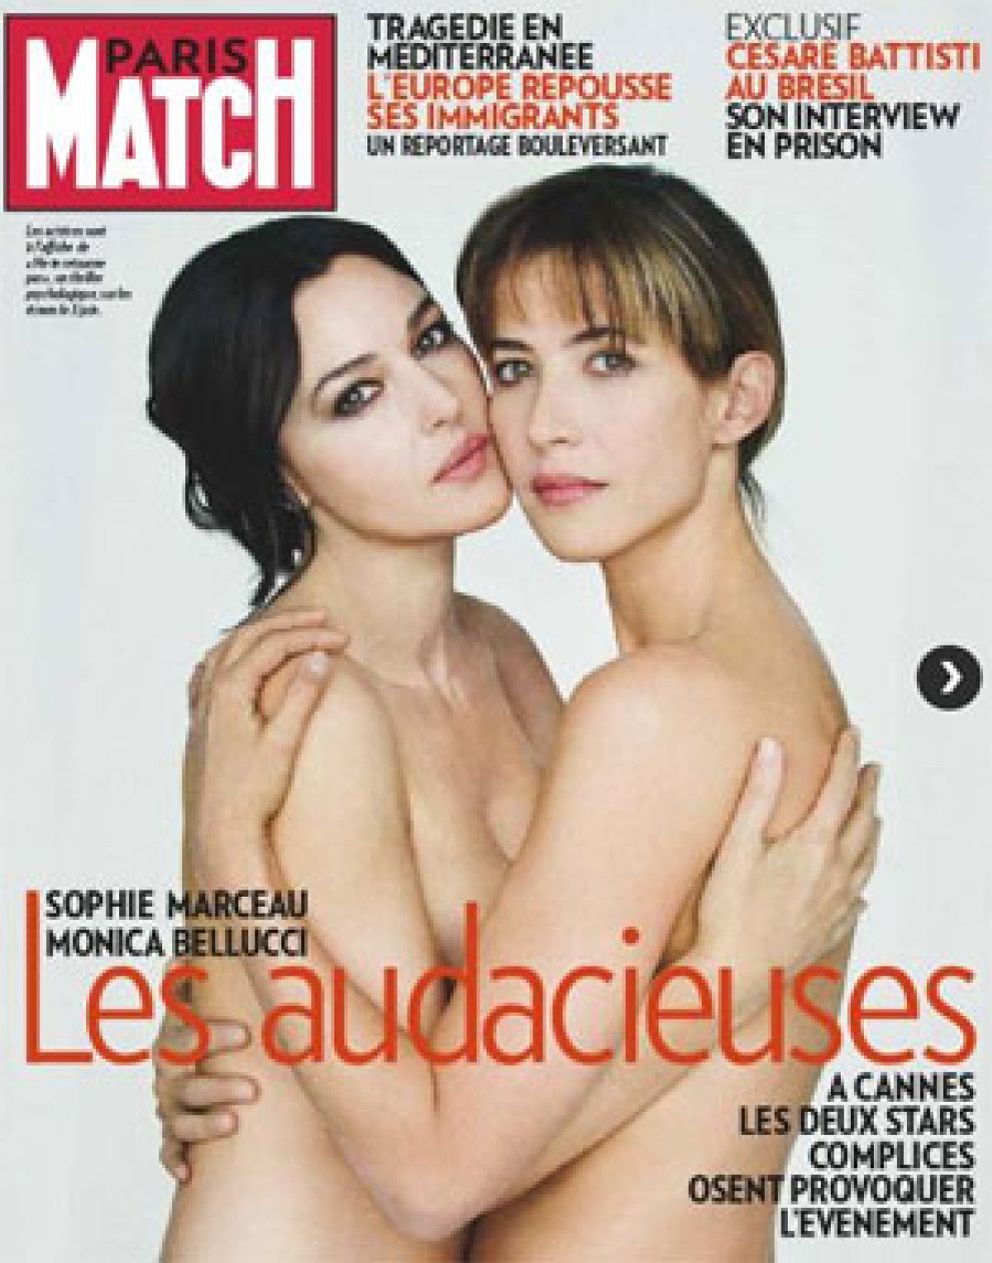 Foto: Monica Bellucci y Sophie Marceau, desnudas y abrazadas